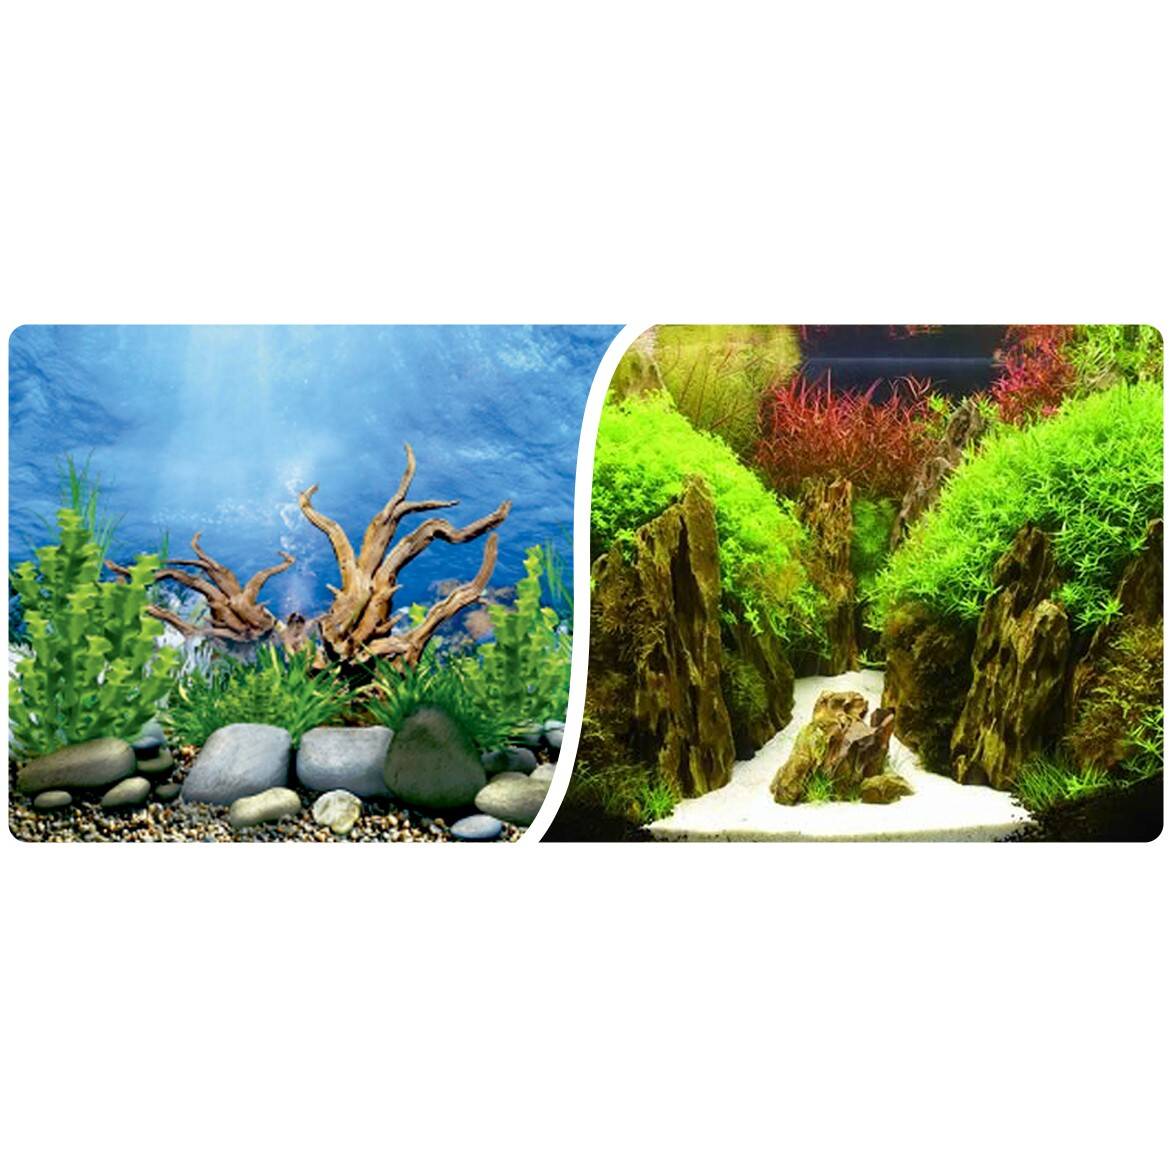 Aquarium background roll 30cm